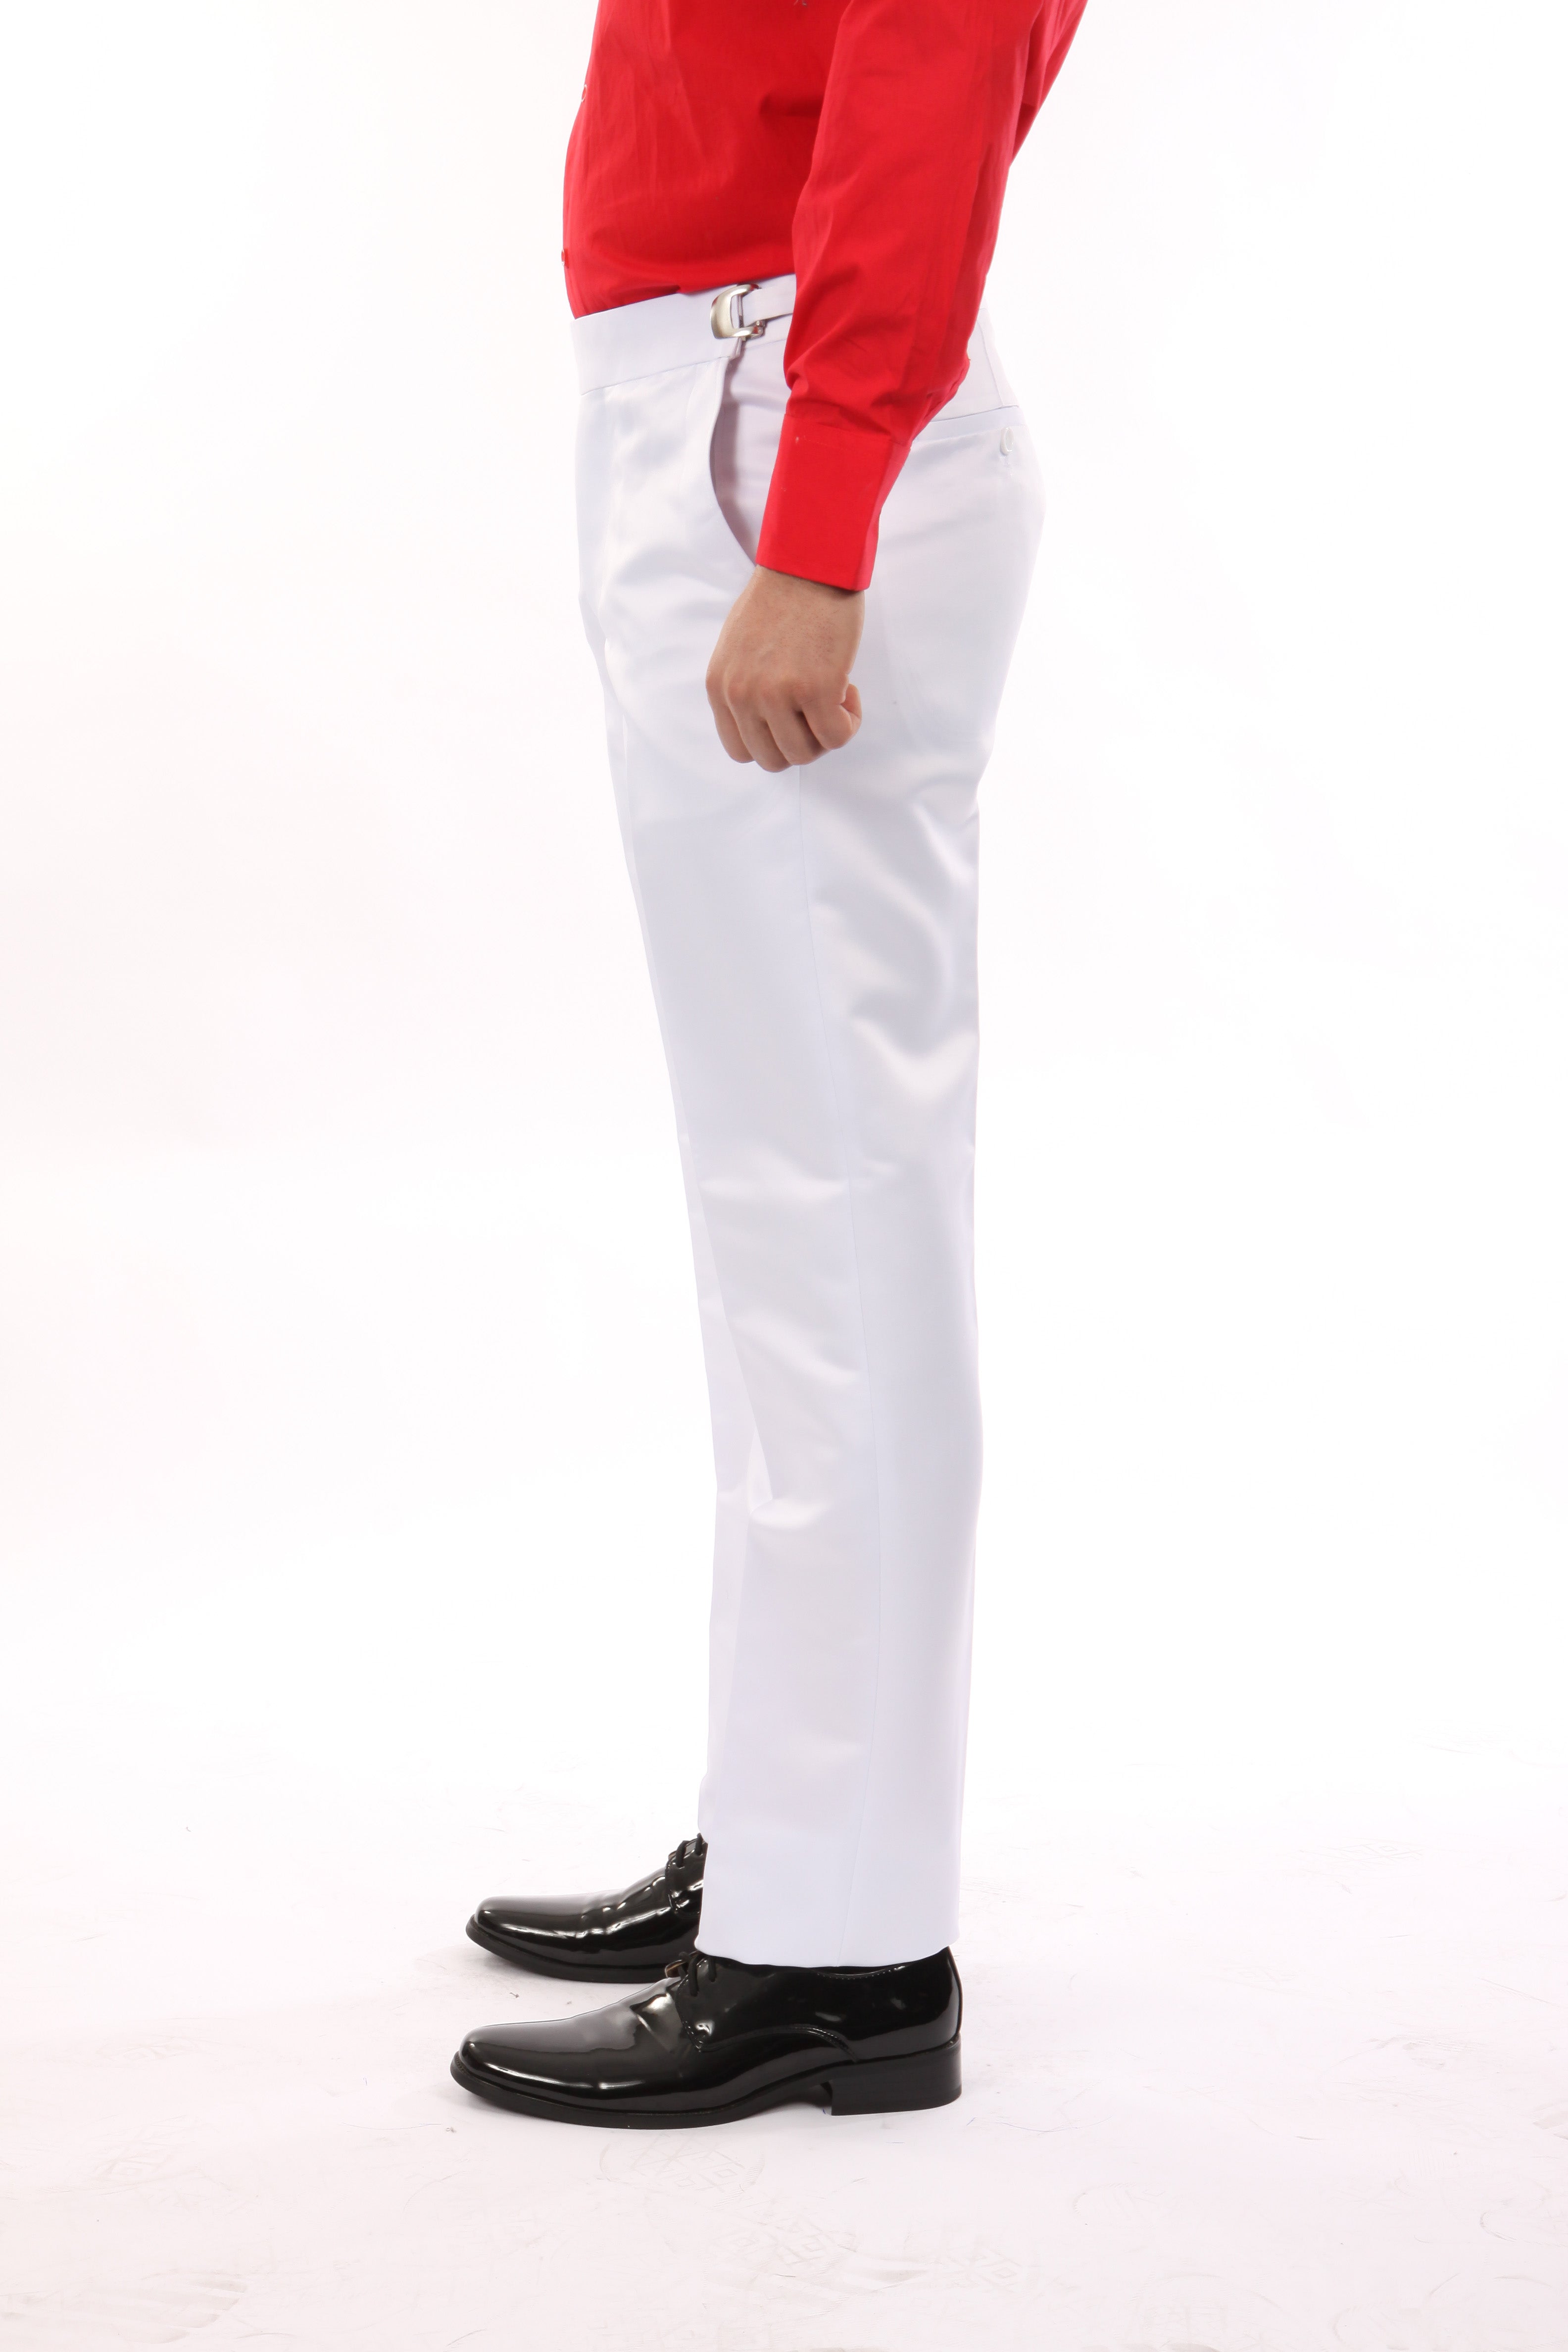 Bryan Michaels White Tuxedo Dress Pants For Men